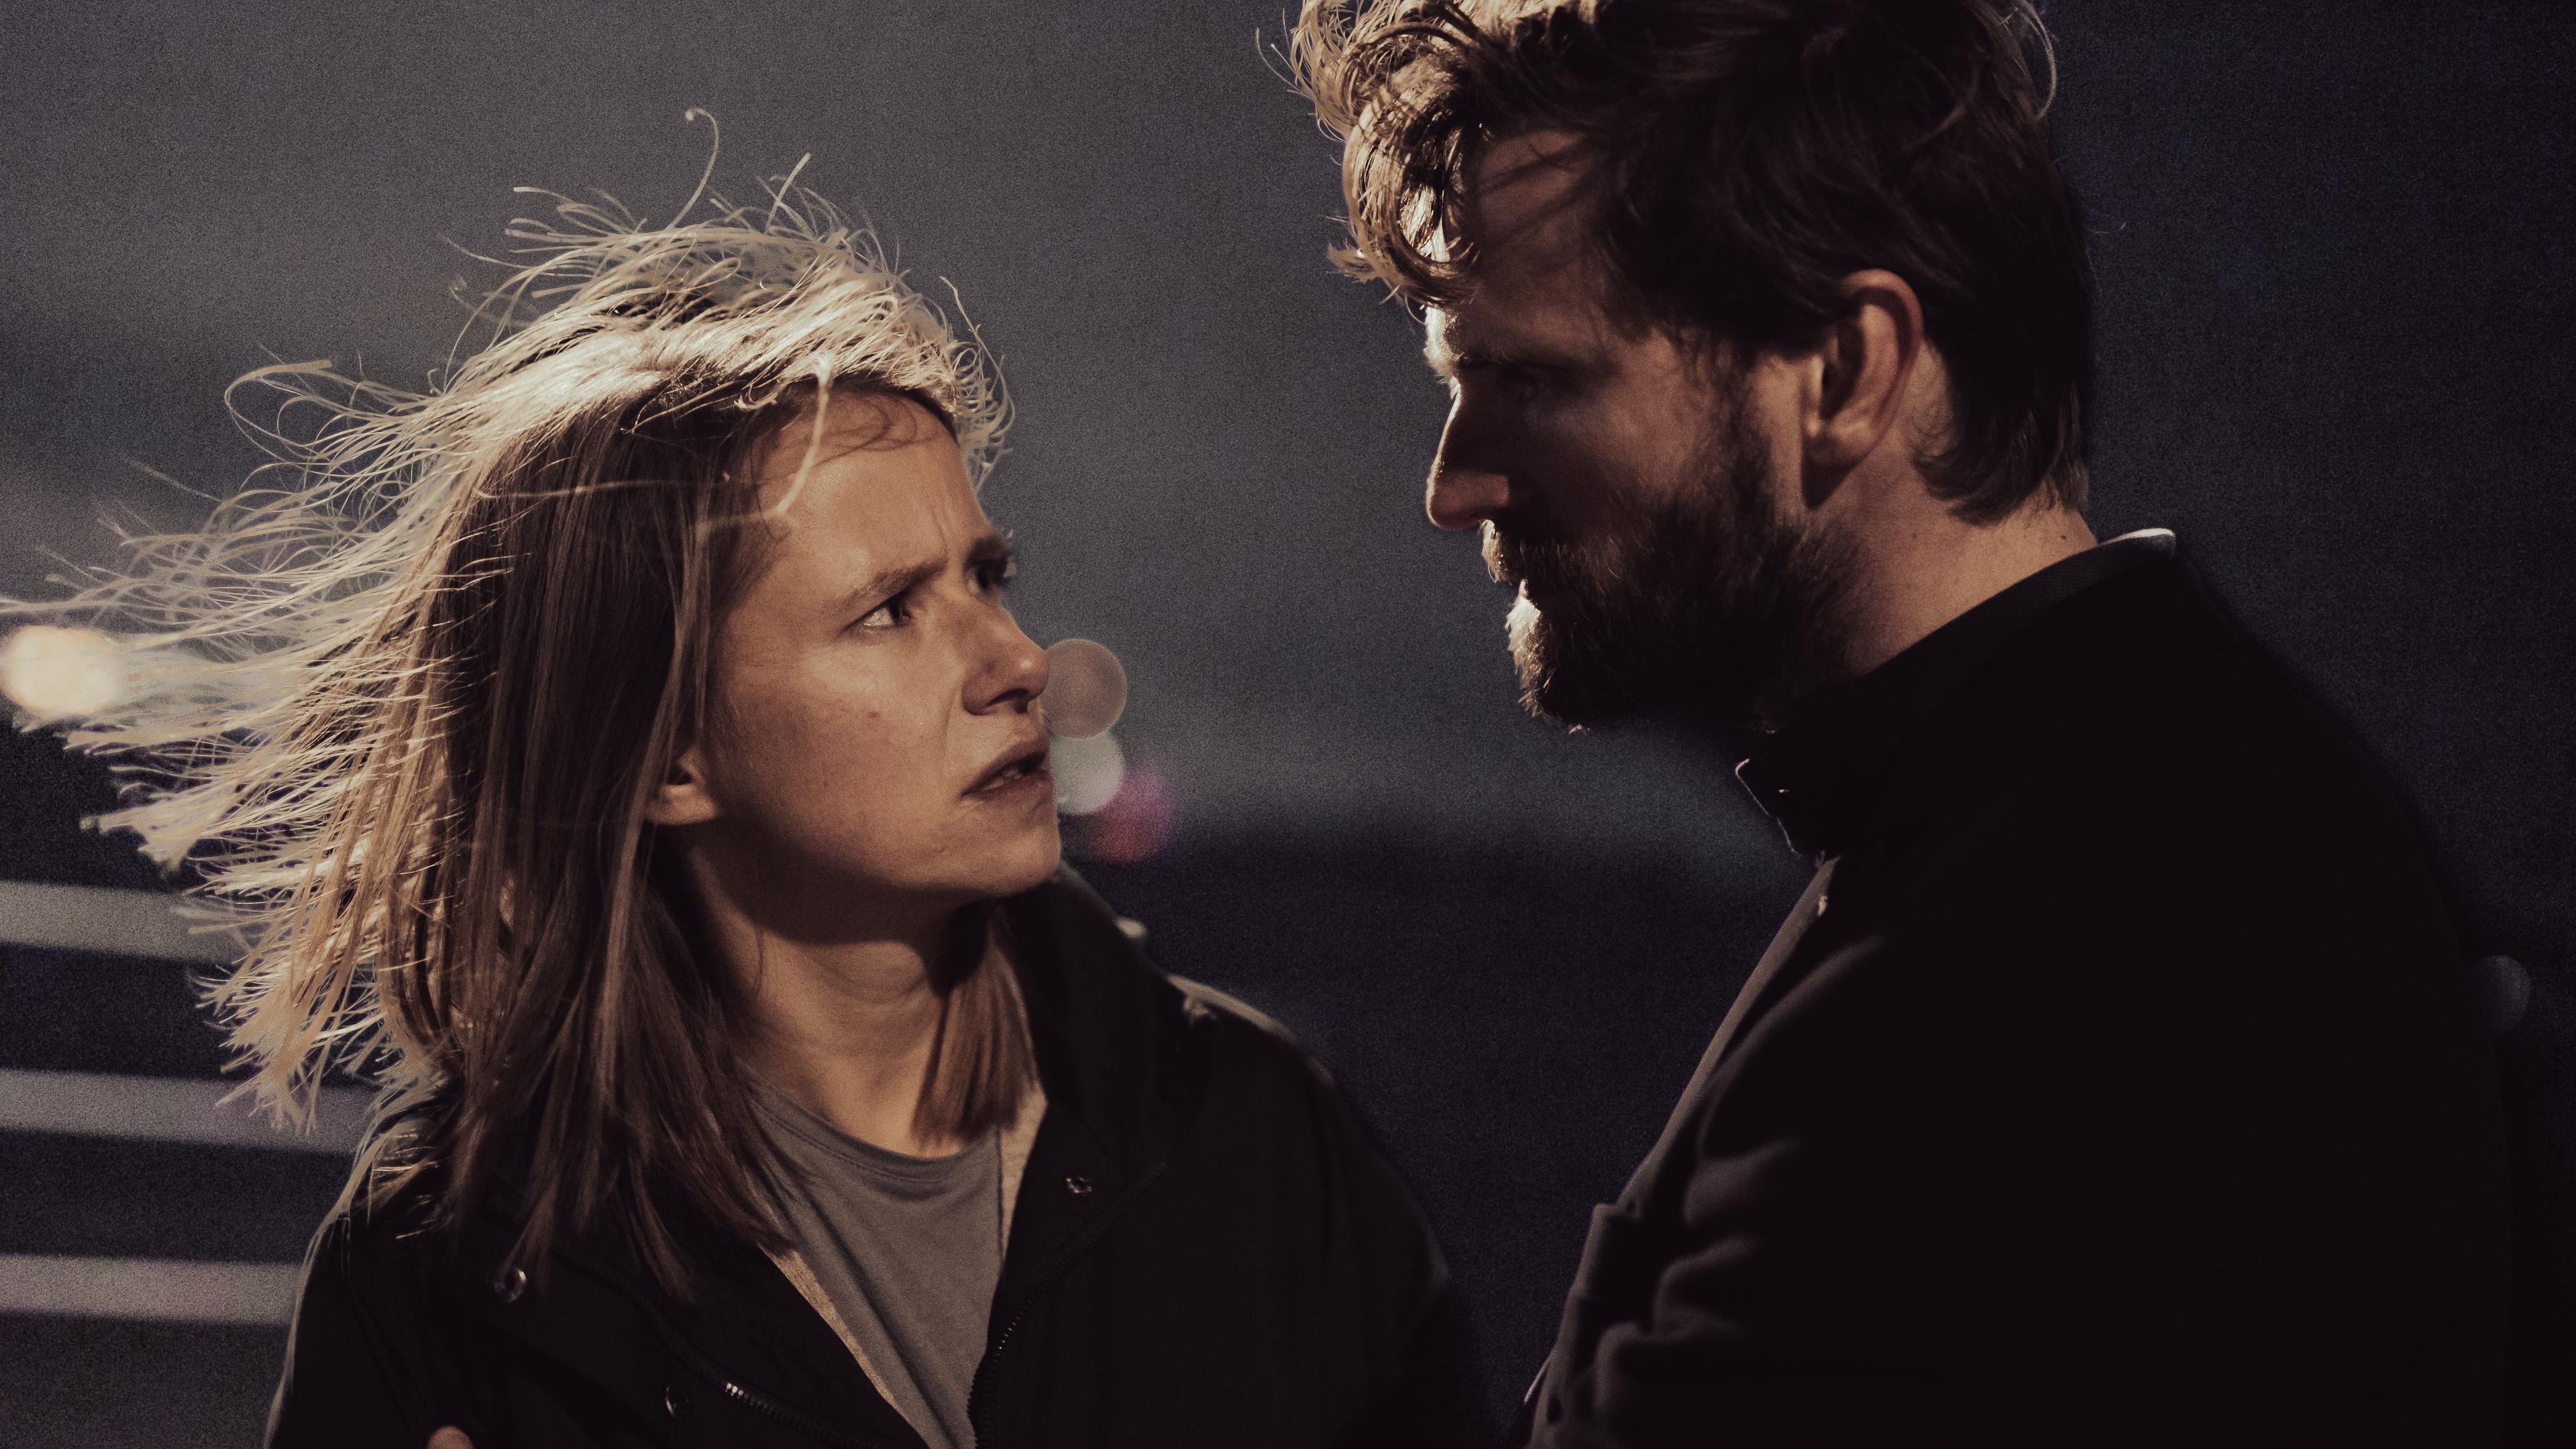 Freya (Susanne Bormann) und Malte (Ulrich Brandhoff) stehen sich gegenüber und reden.